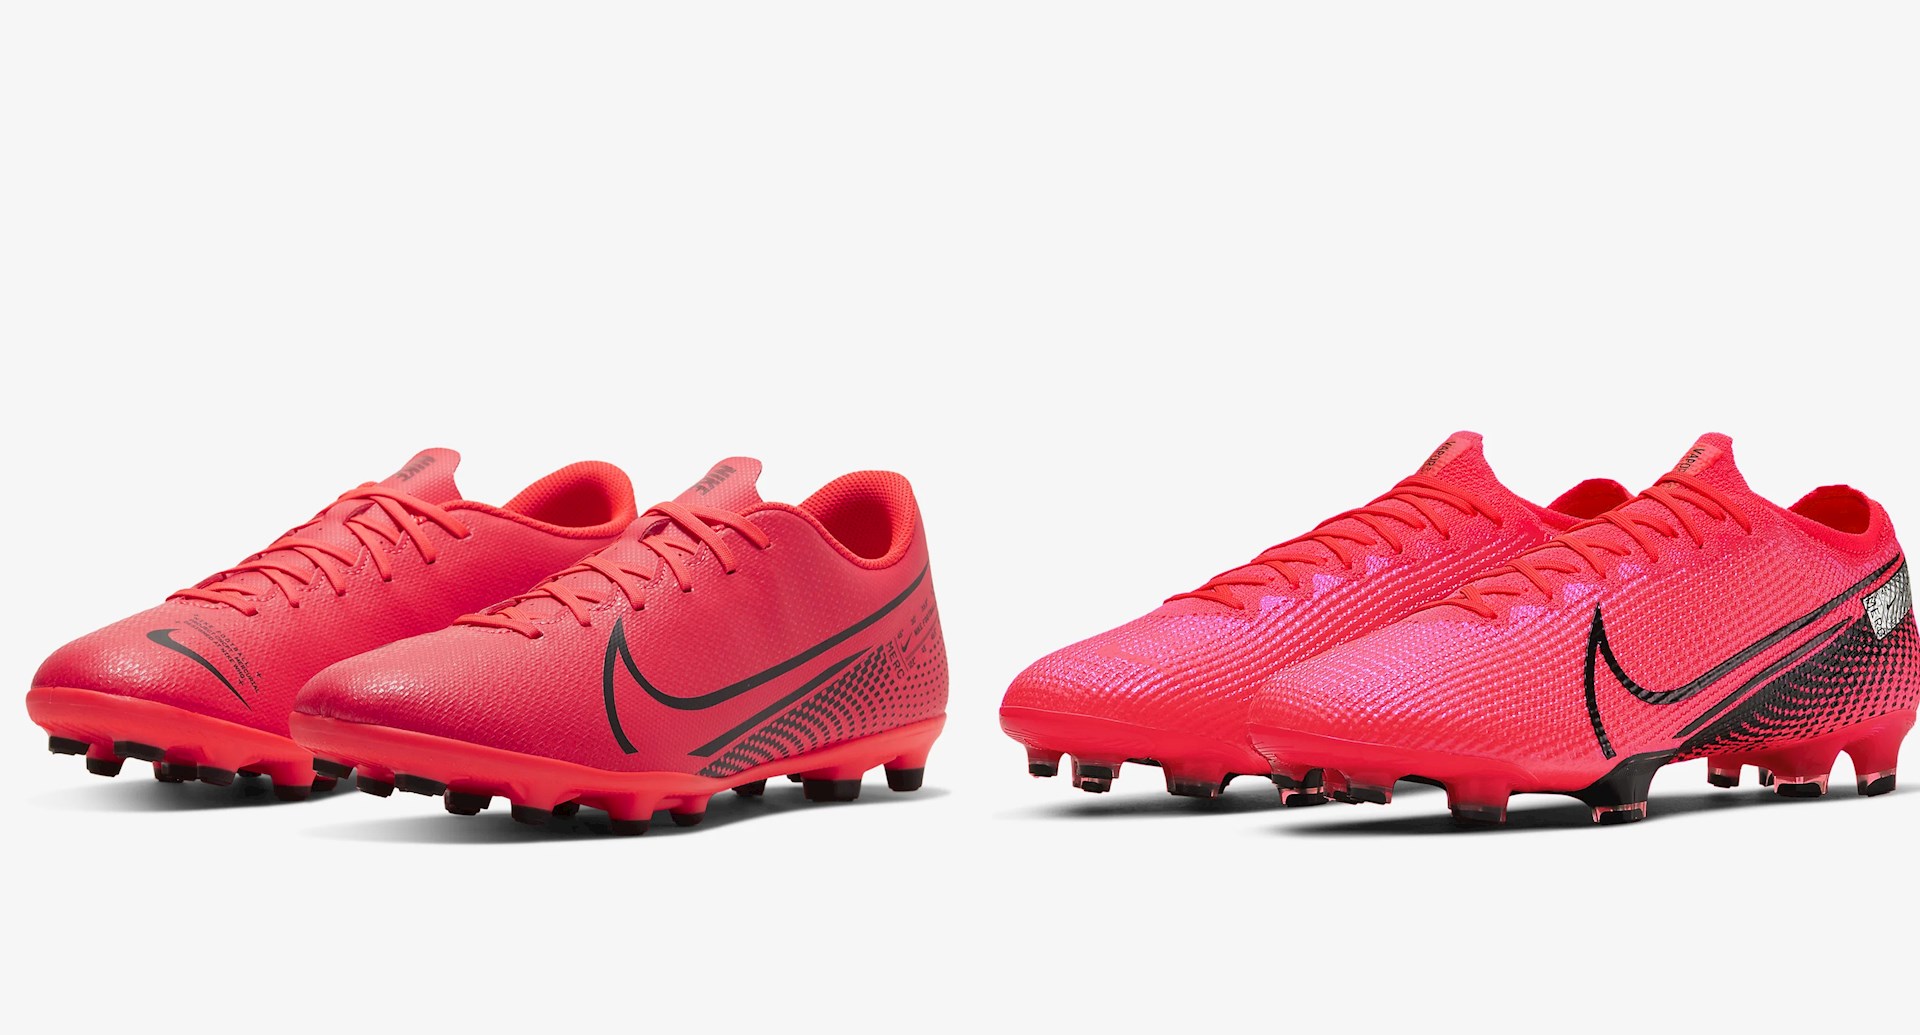 knoflook middag Pasen Goedkope Nike Mercurial Vapor voetbalschoenen - Voetbal-schoenen.eu